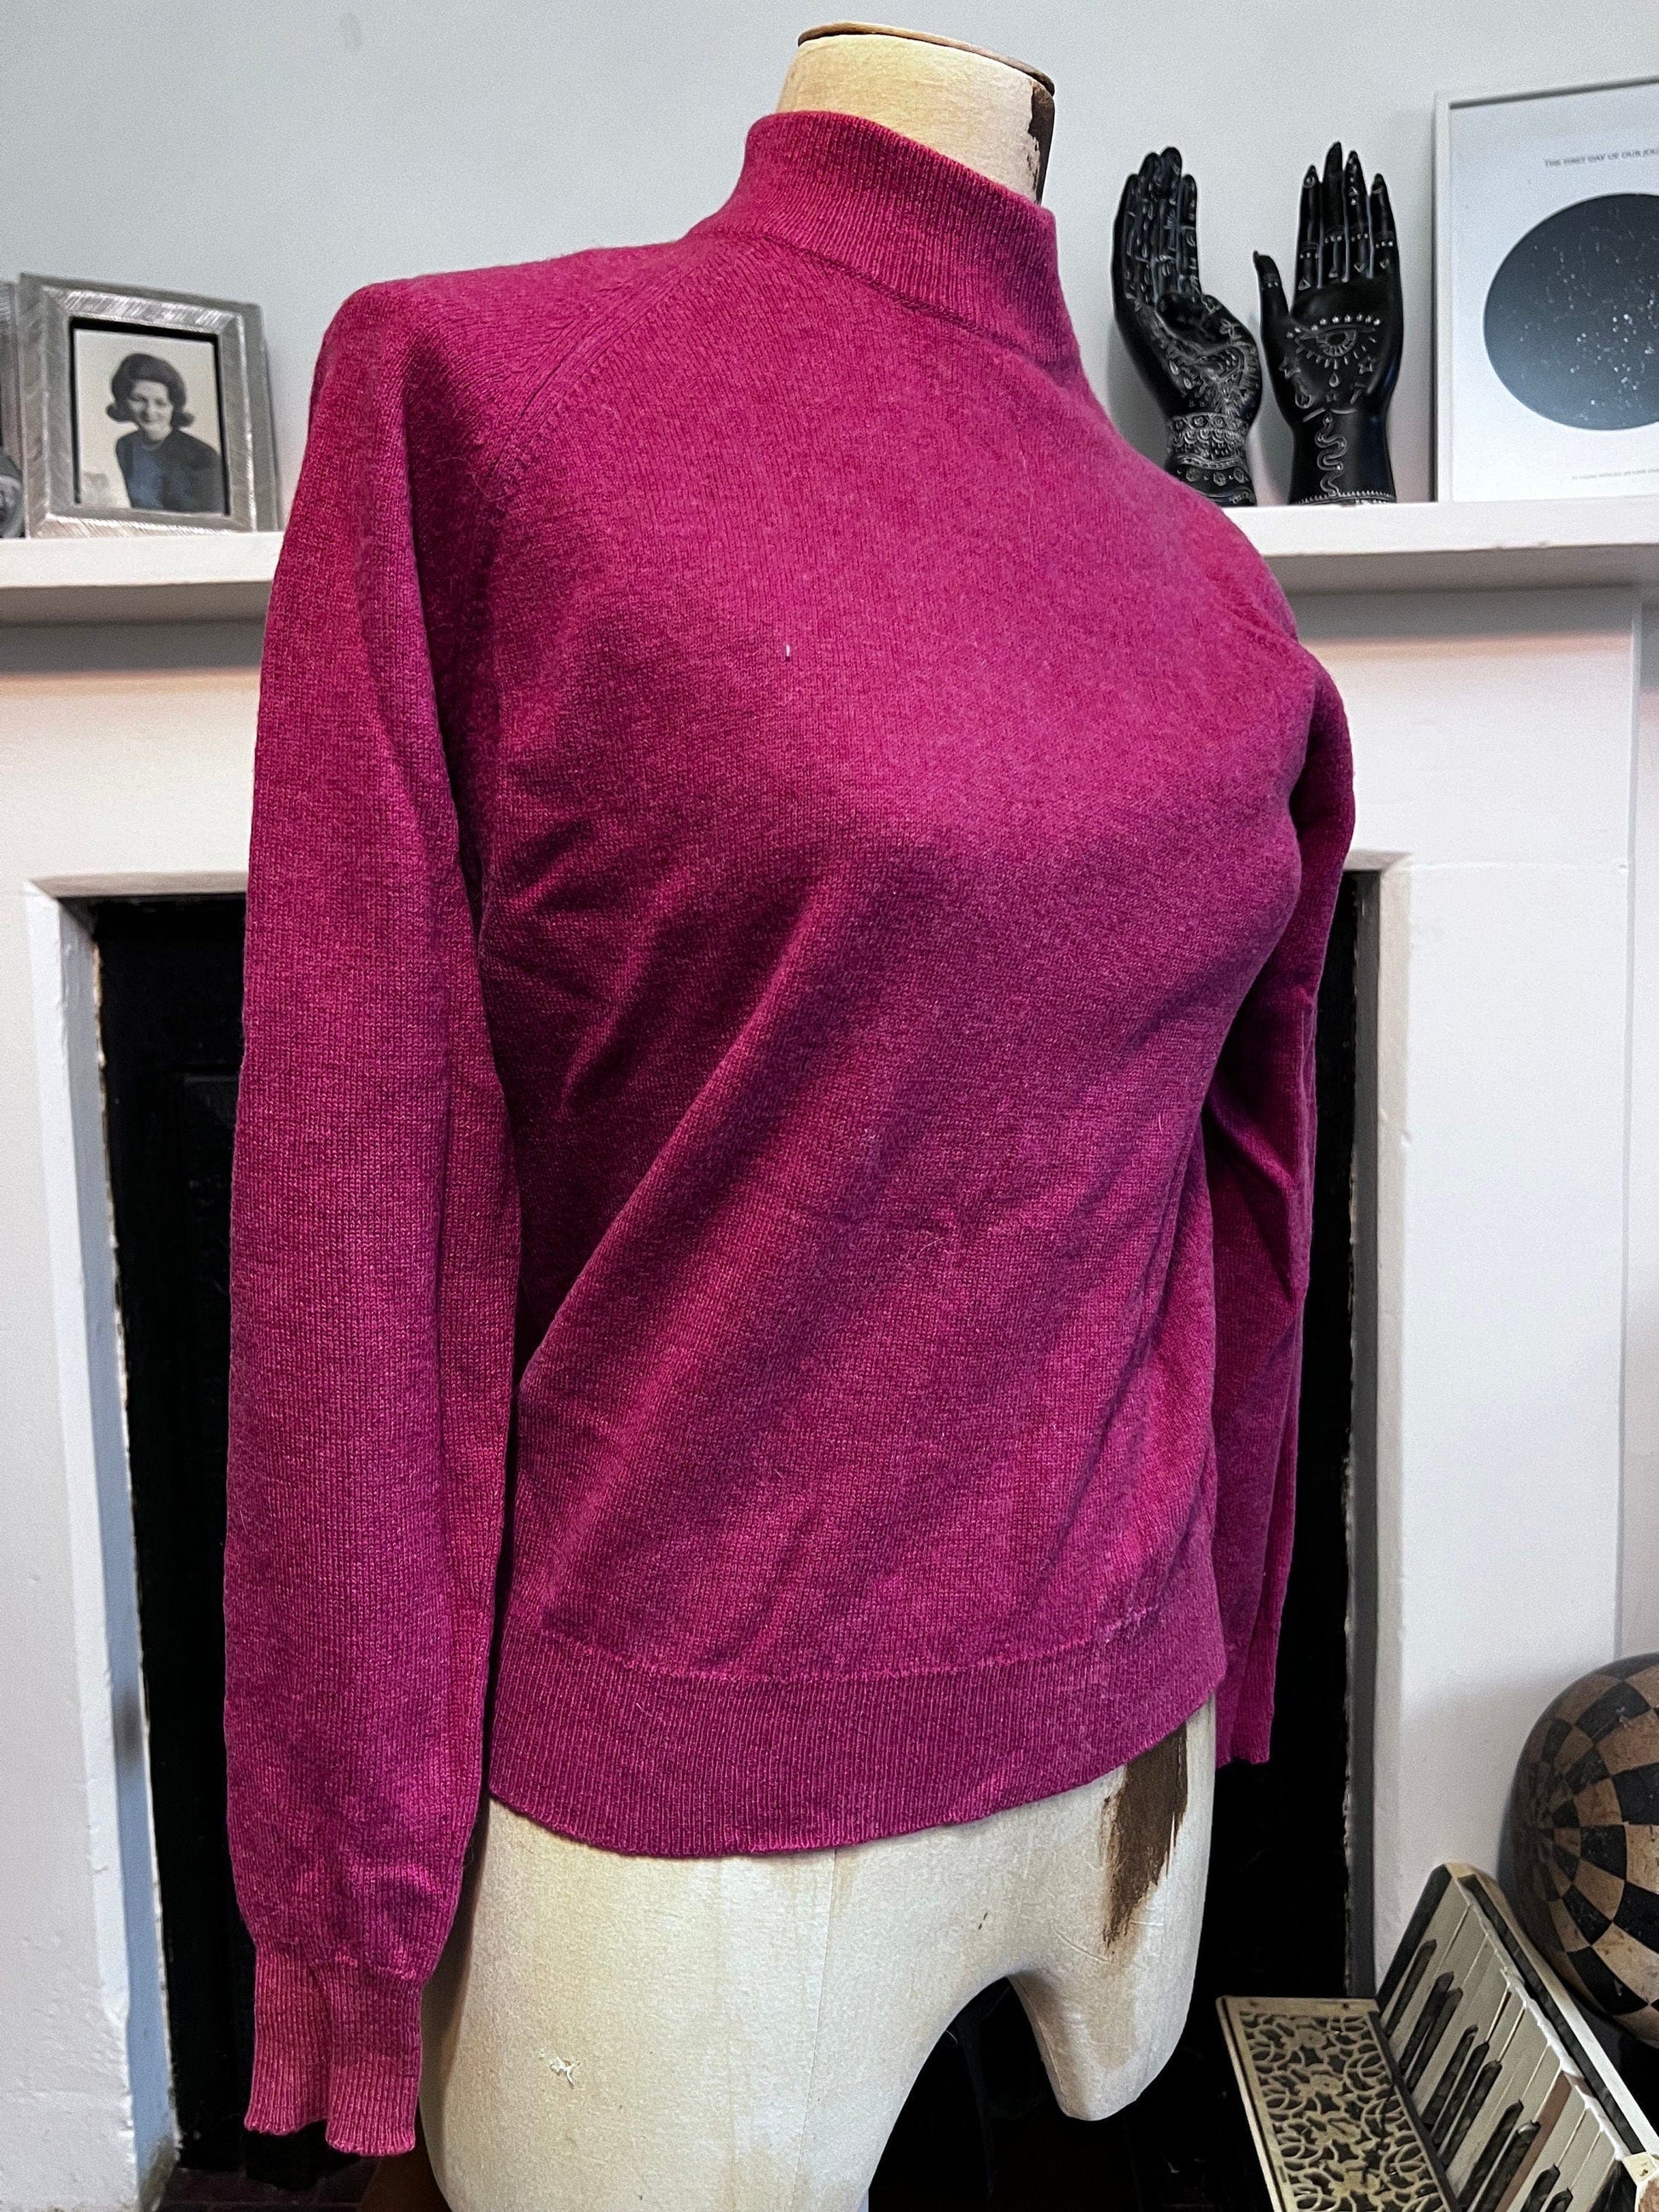 Vintage raspberry pink jumper lambswool jumper pink jumper, vintage knitwear, vintage pullover, vintage jumper, 1950s, vintage knitwear, top